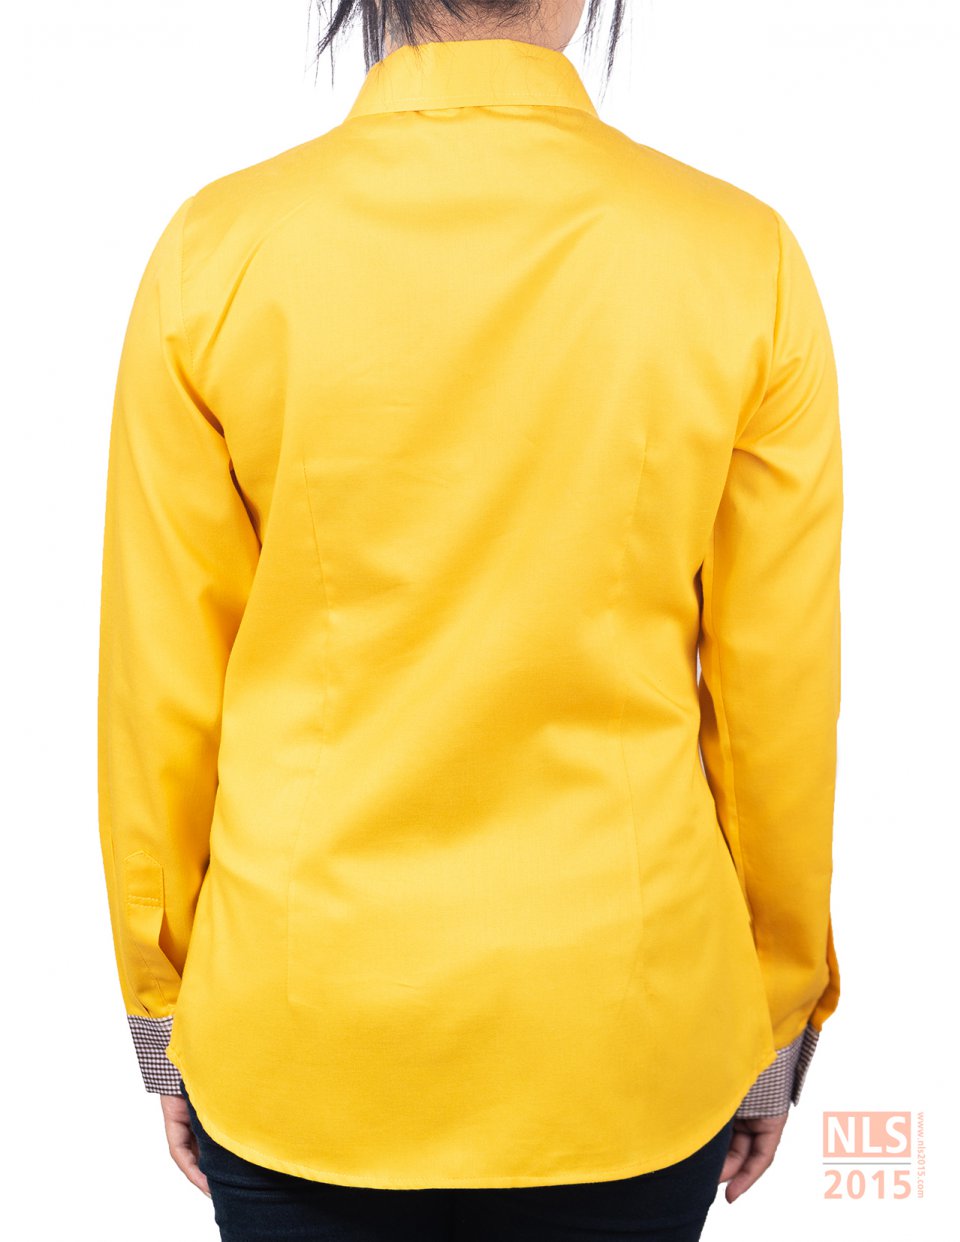 โรงงานผลิตเสื้อเชิ้ตพนักงานออฟฟิศ พร้อมบริการออกแบบ และขึ้นตัวอย่างให้ฟรี ก่อนผลิตจริง บริษัท นลินสิริ 2015 จำกัด ชลบุรีรูปที่ 